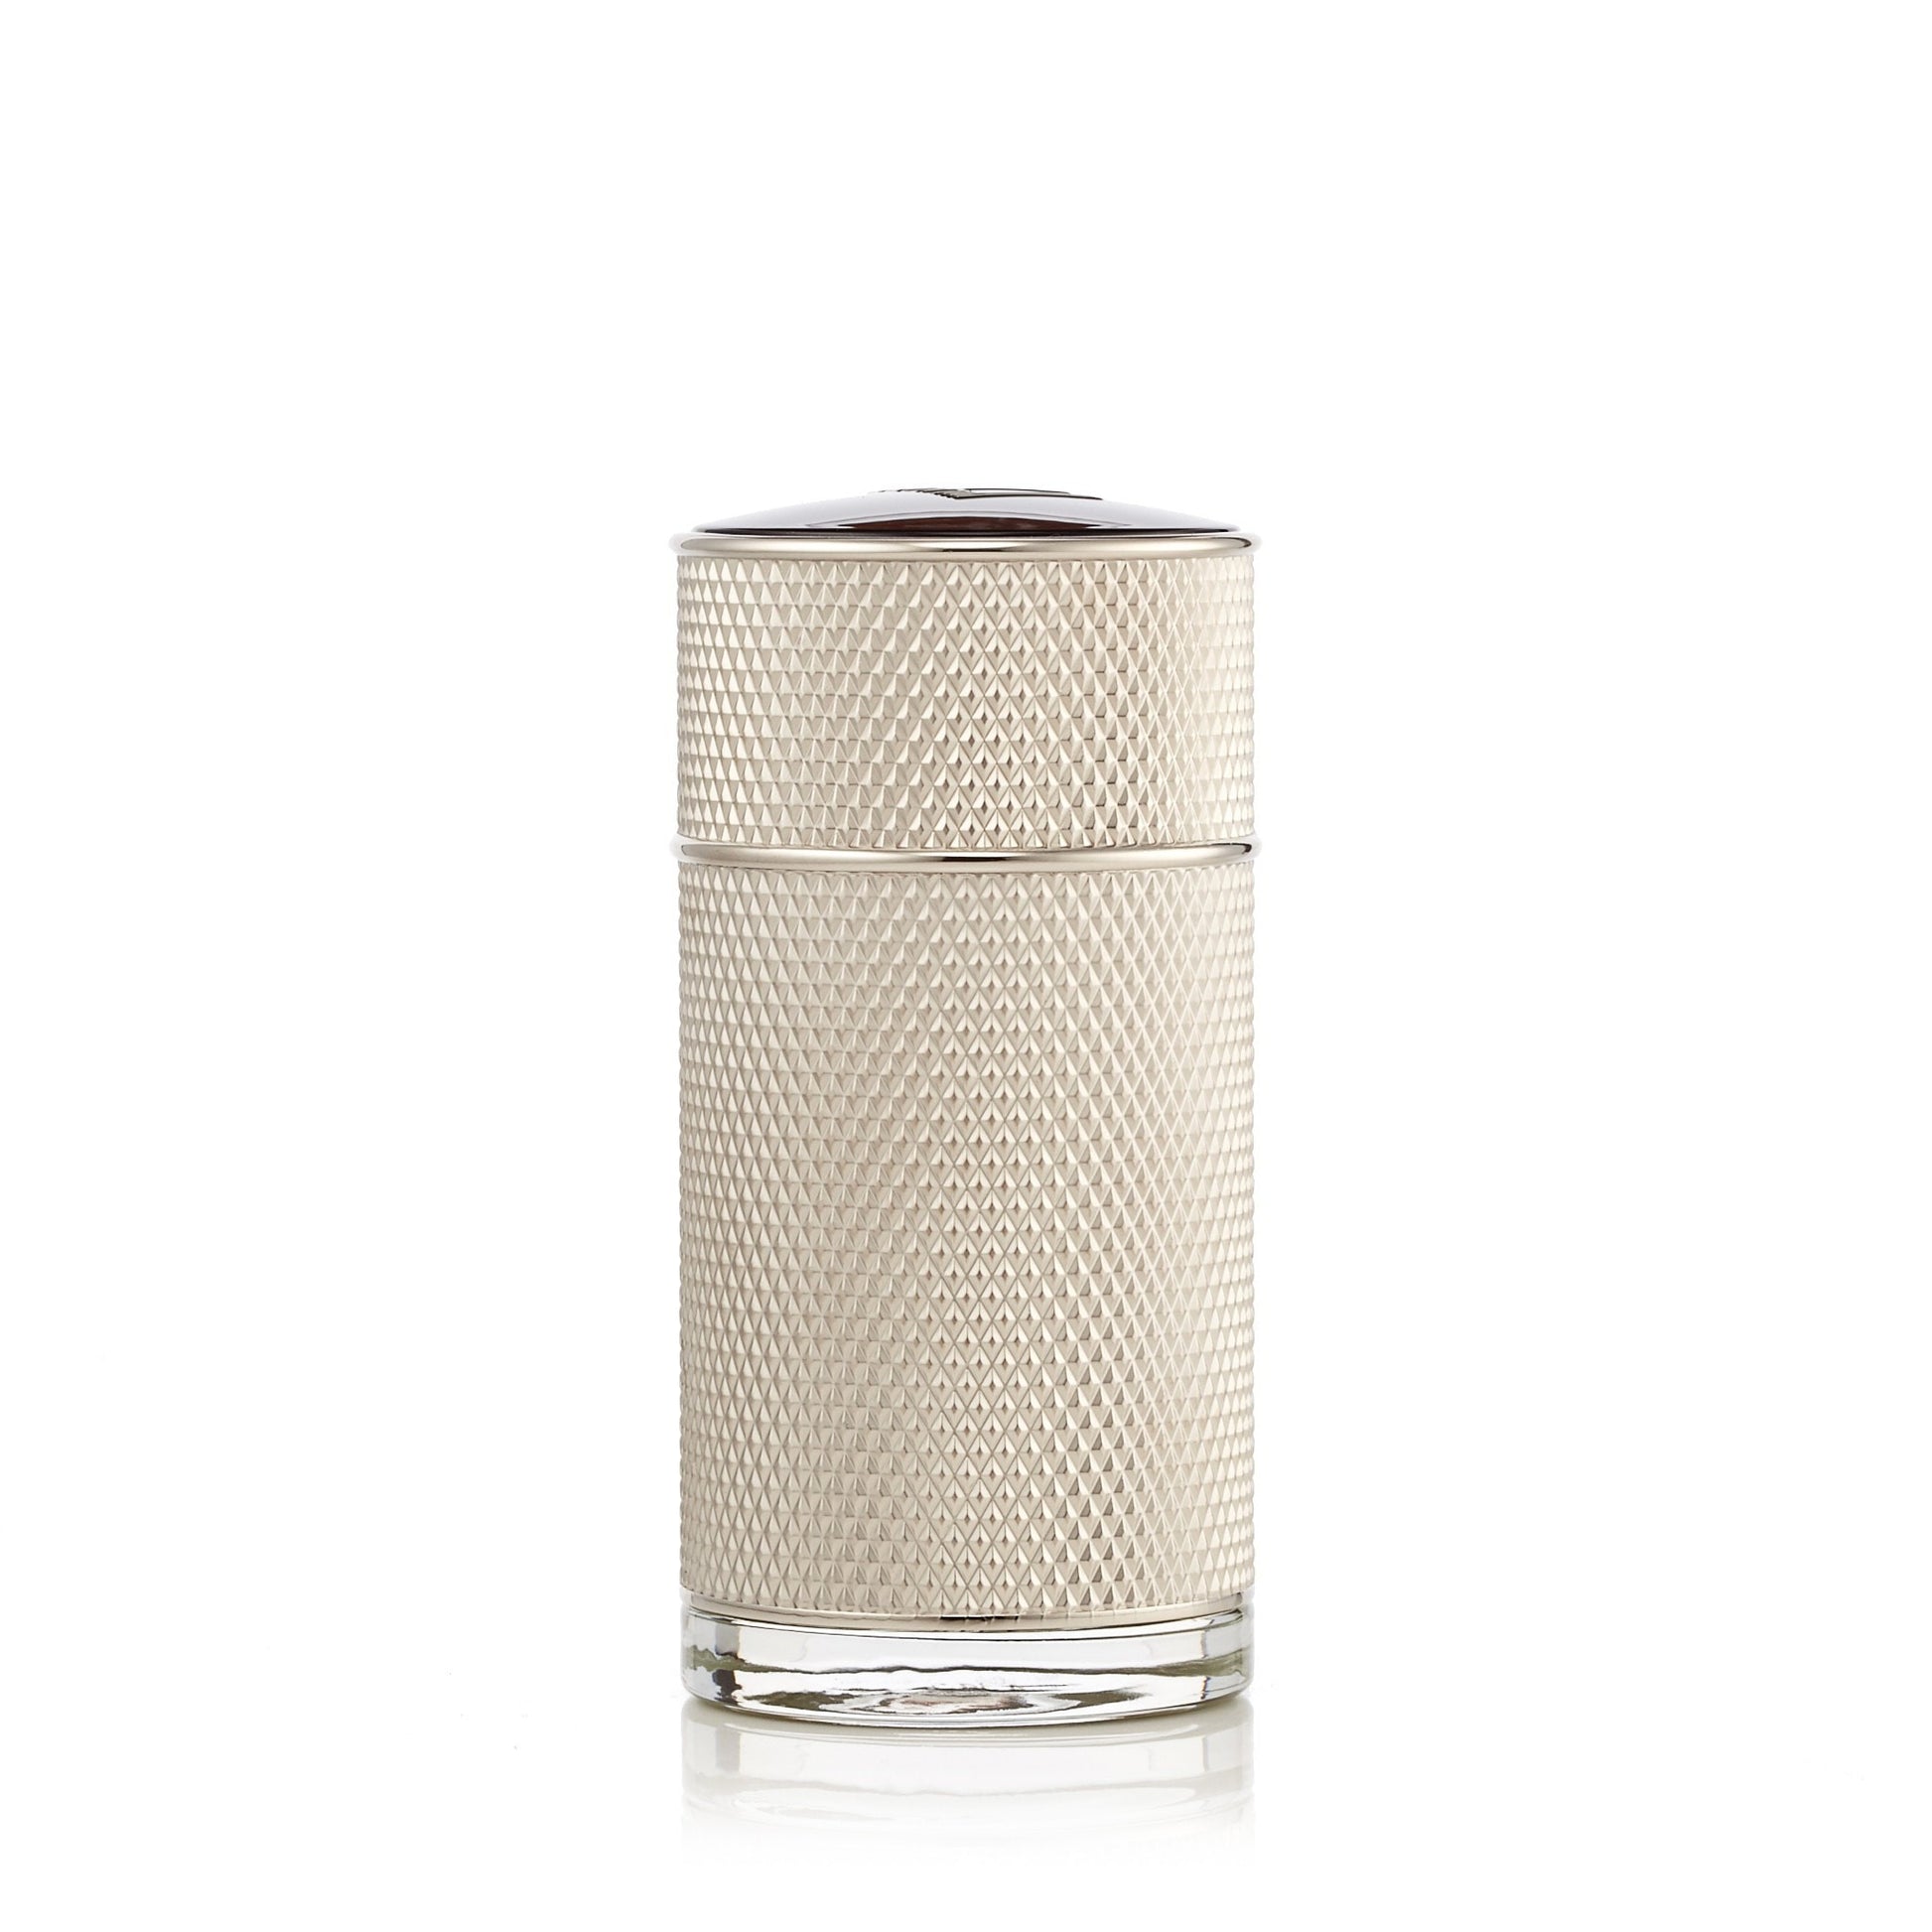 Icon Eau de Parfum Spray for Men by Alfred Dunhill 3.4 oz. Click to open in modal